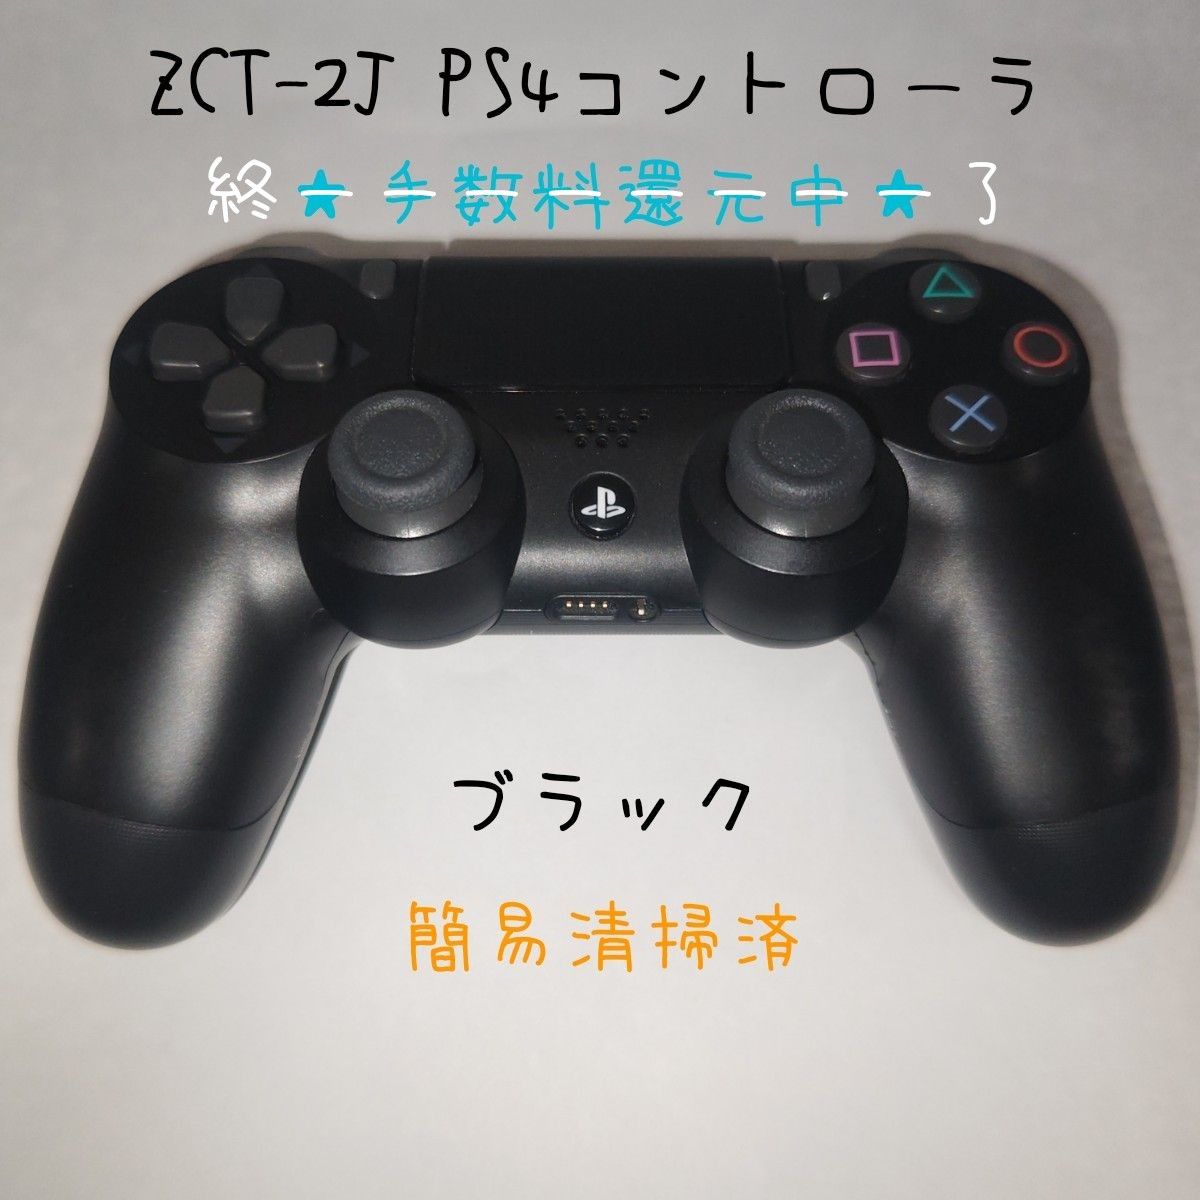 中古 PS4 純正 コントローラ ZCT-2J 元ジャンク品